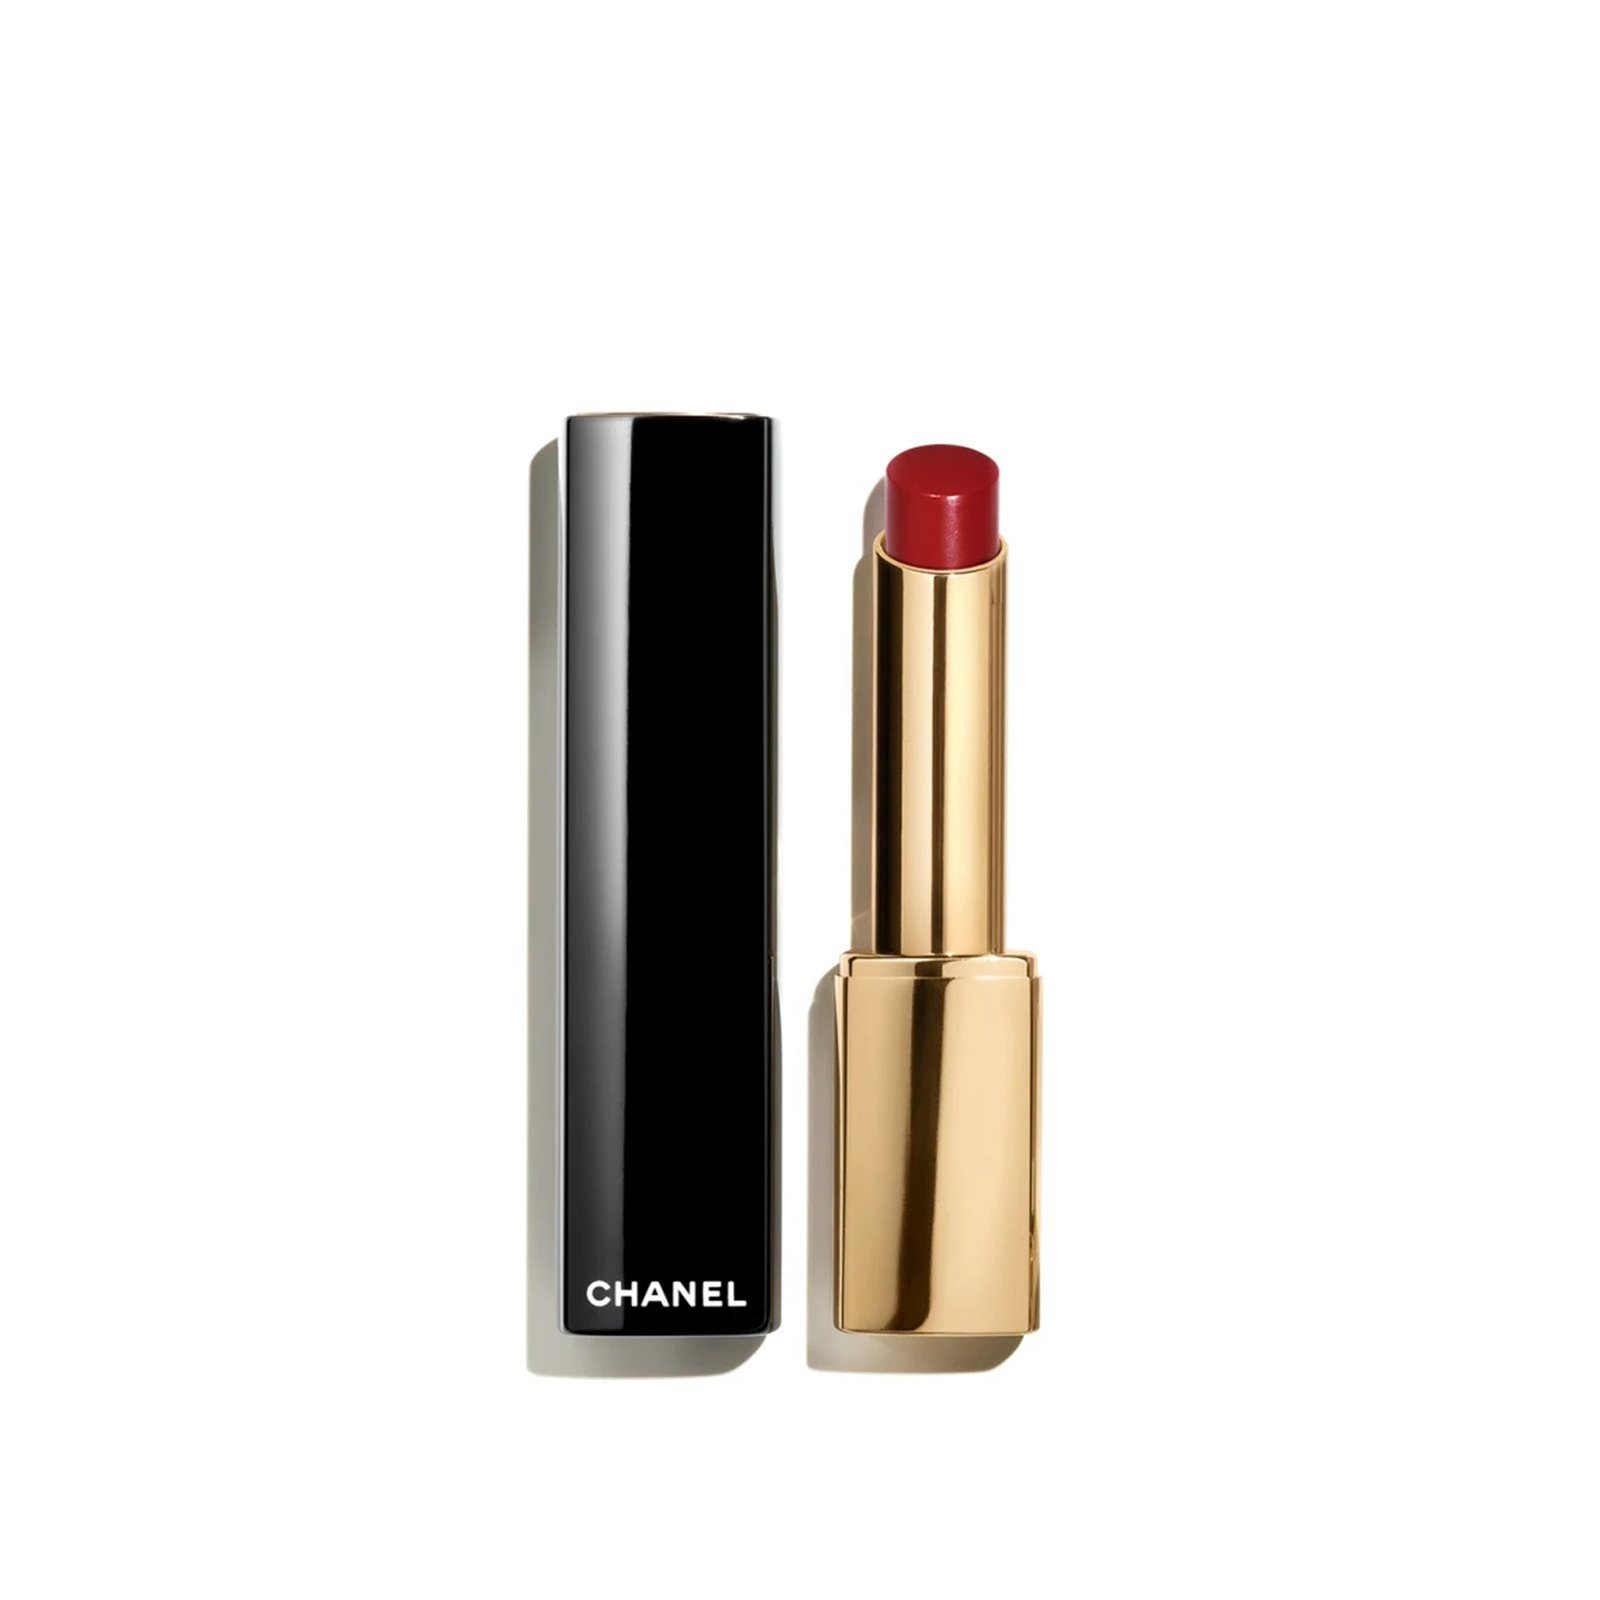 CHANEL Rouge Allure L'Extrait High-Intensity Lip Colour 858 Rouge Royal 2g (0.07 oz)